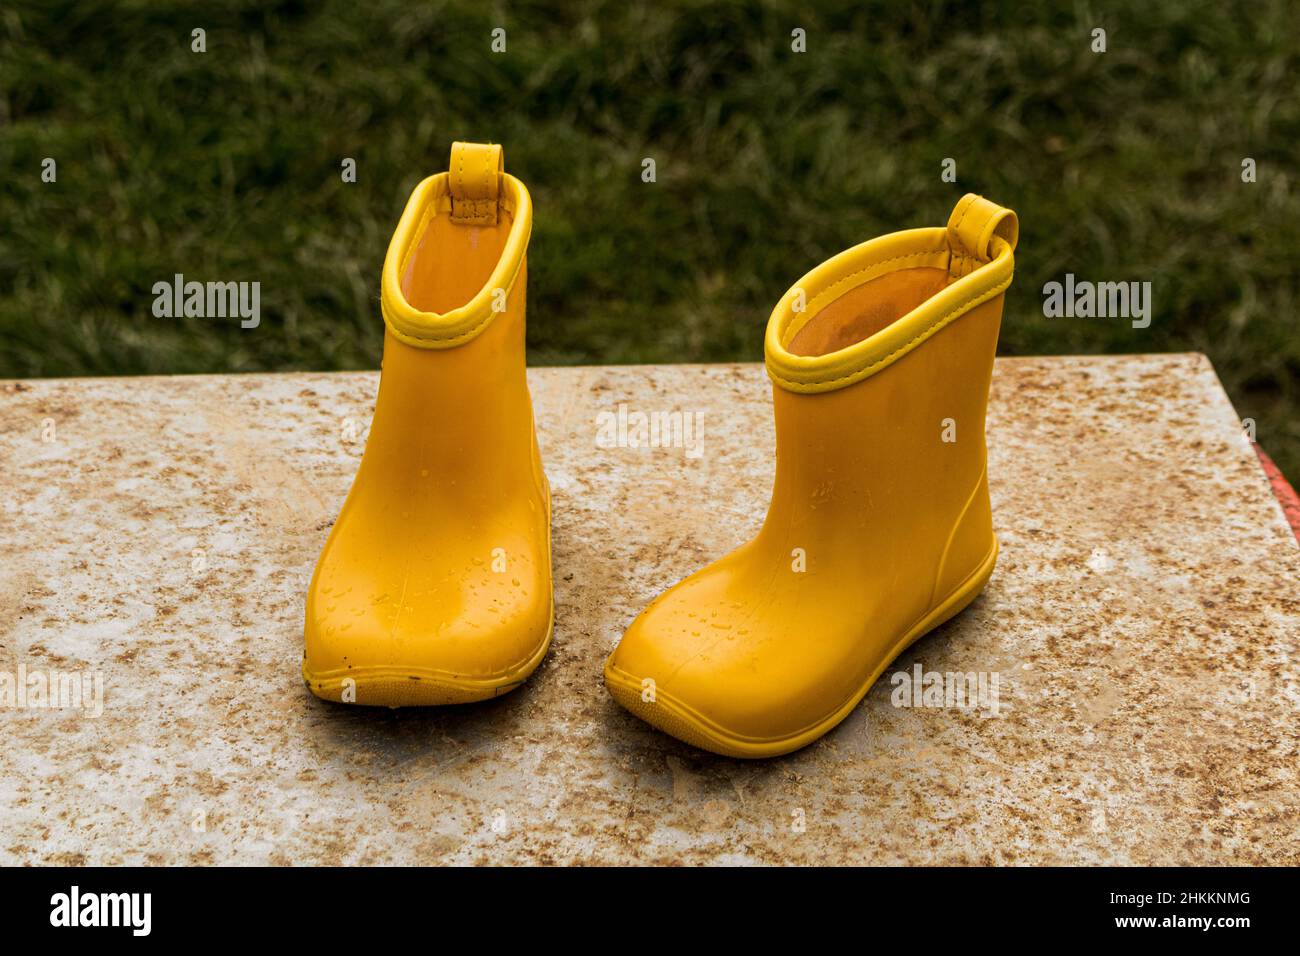 Nahaufnahme einer gelben Gummistiefel für Kinder auf einer Steinbank im Garten Stockfoto